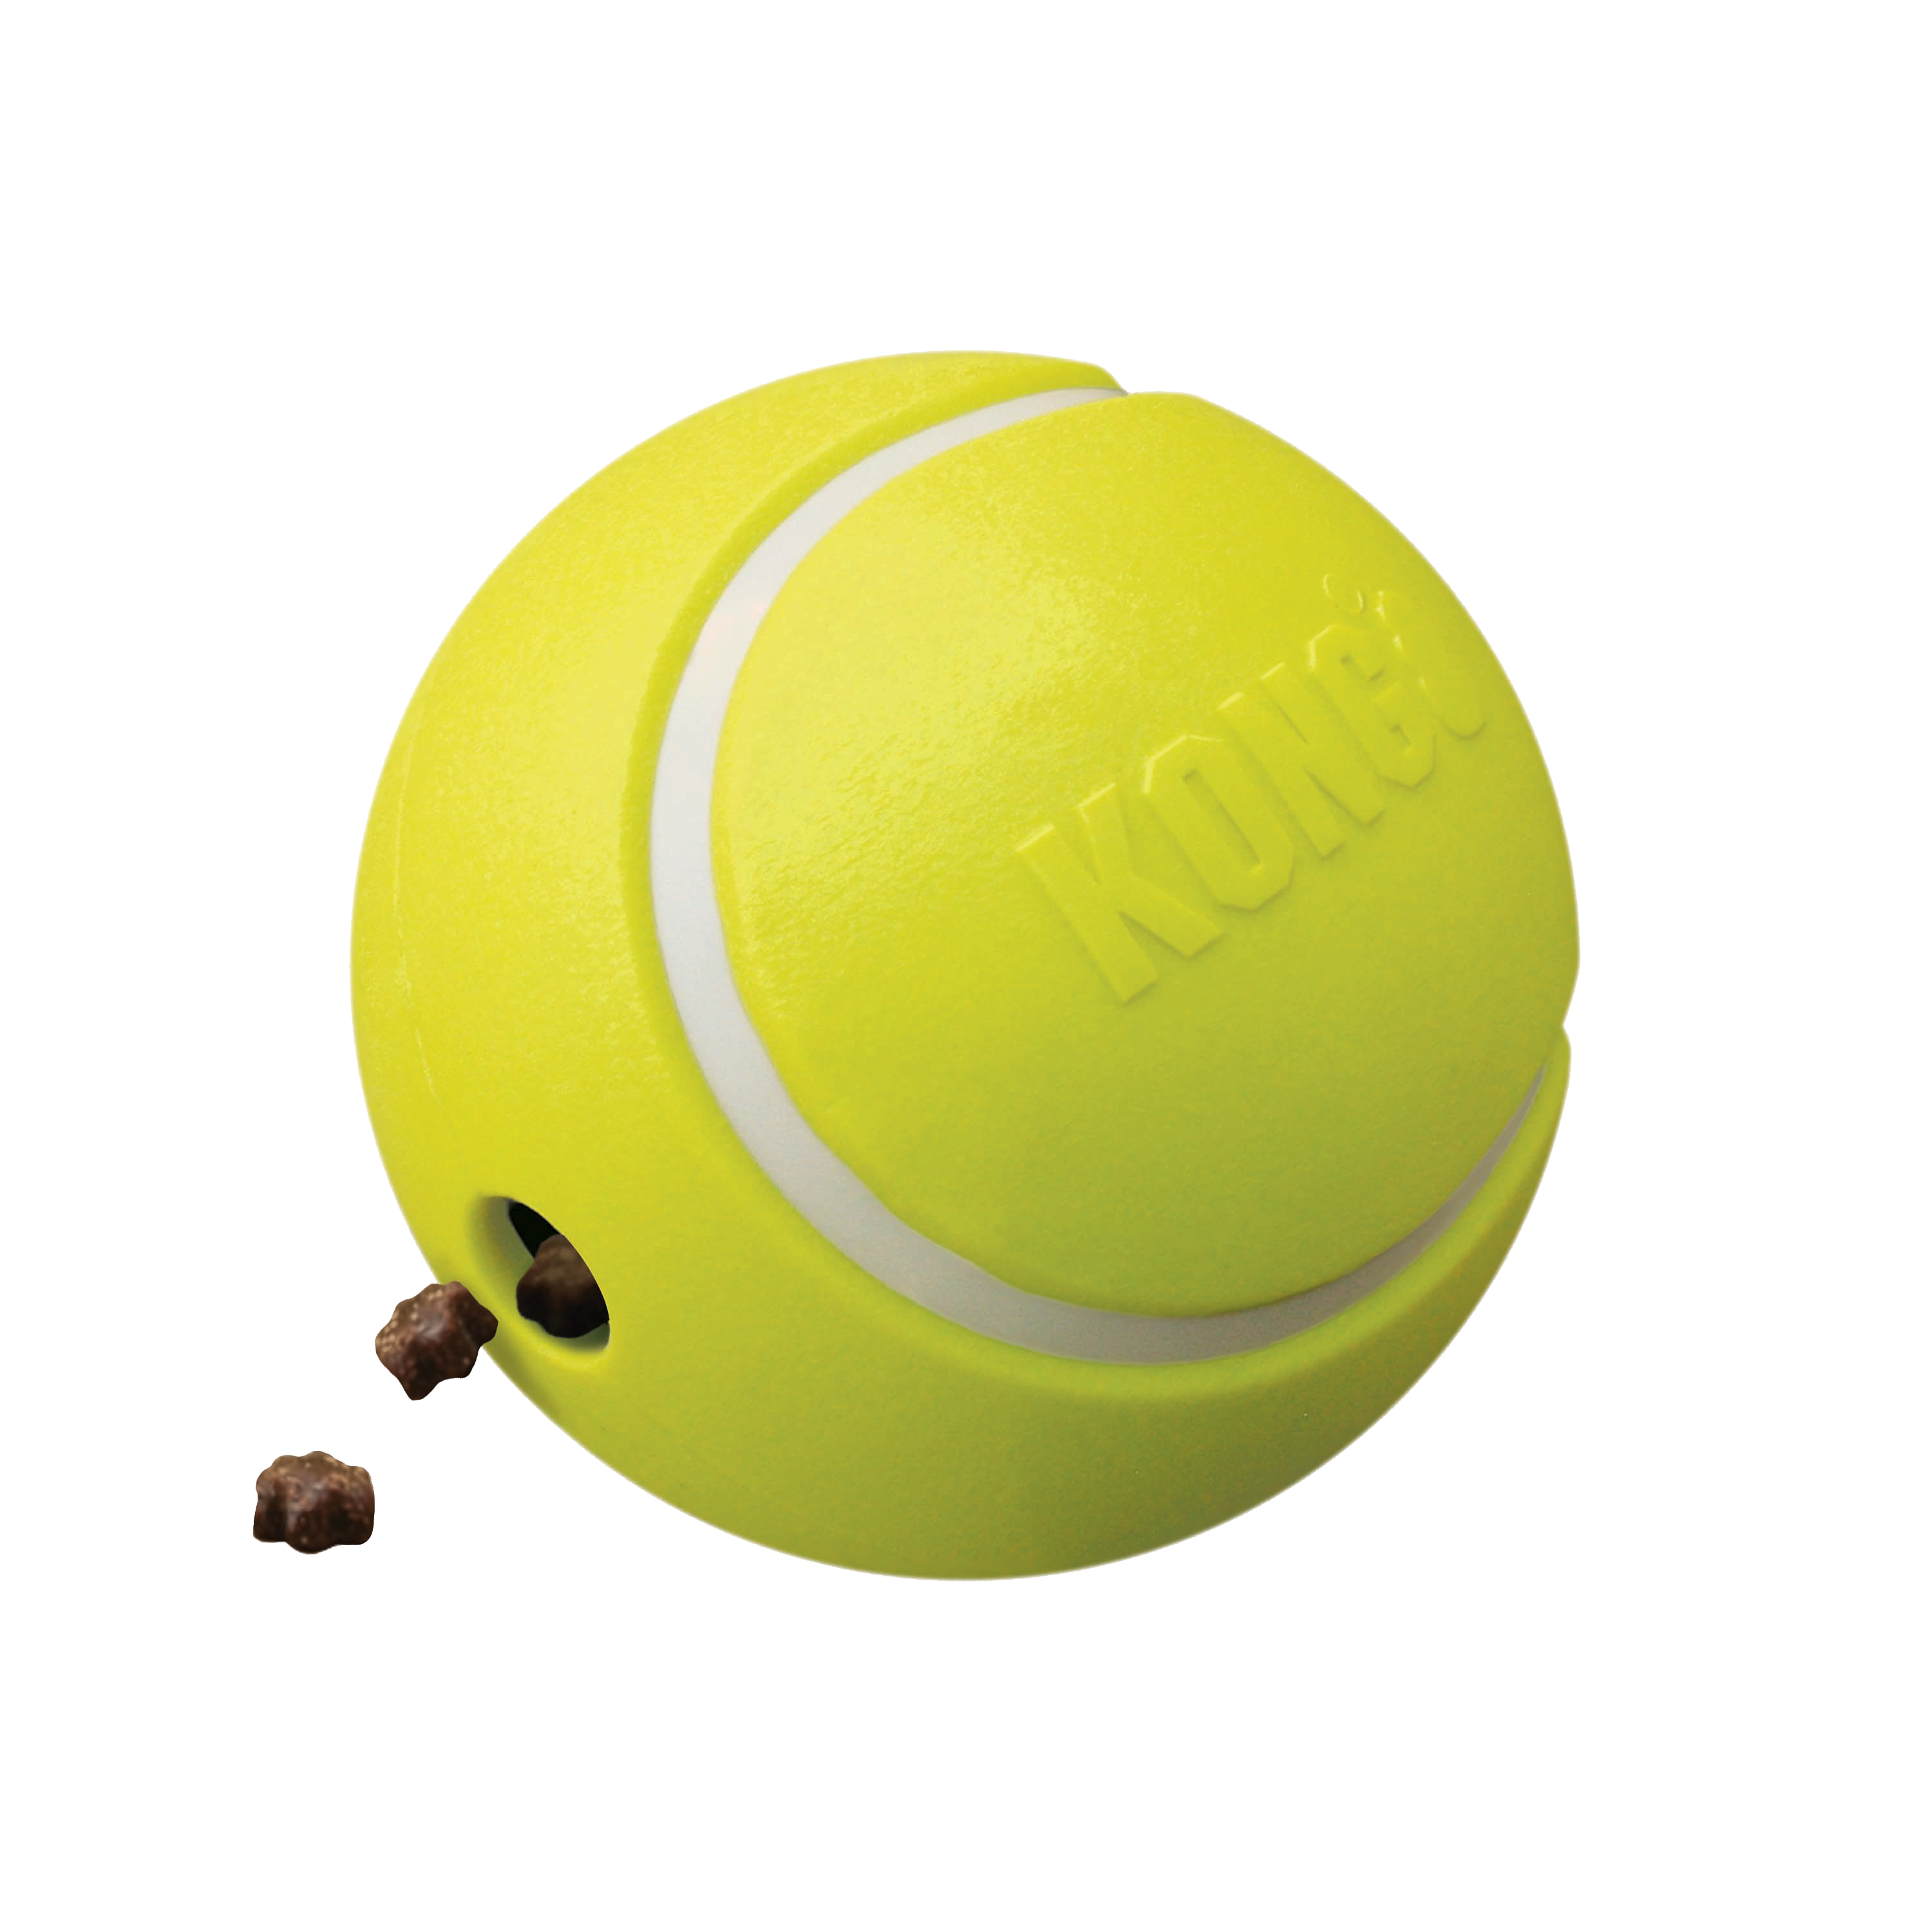 Belohnungen Tennis offpack Produktbild